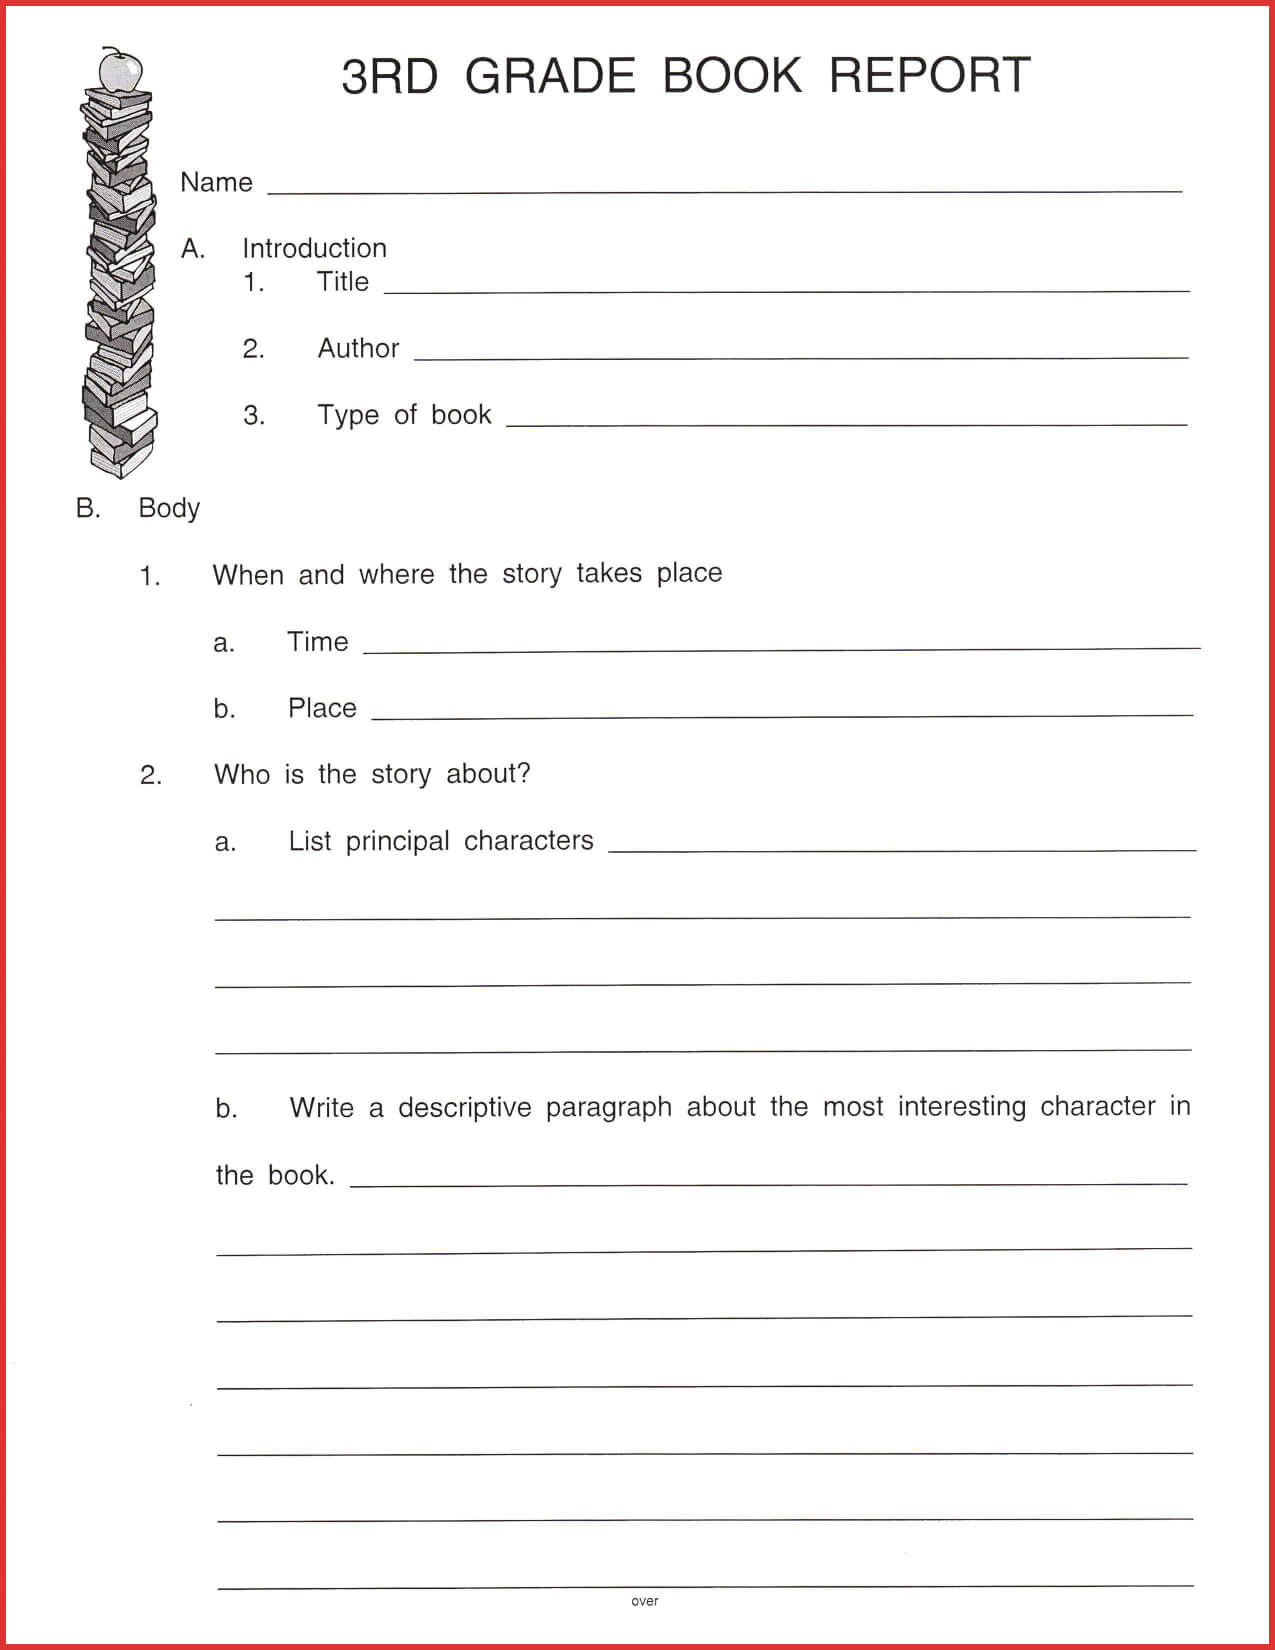 Fresh 3Rd Grade Book Report Template | Job Latter Intended For 2Nd Grade Book Report Template